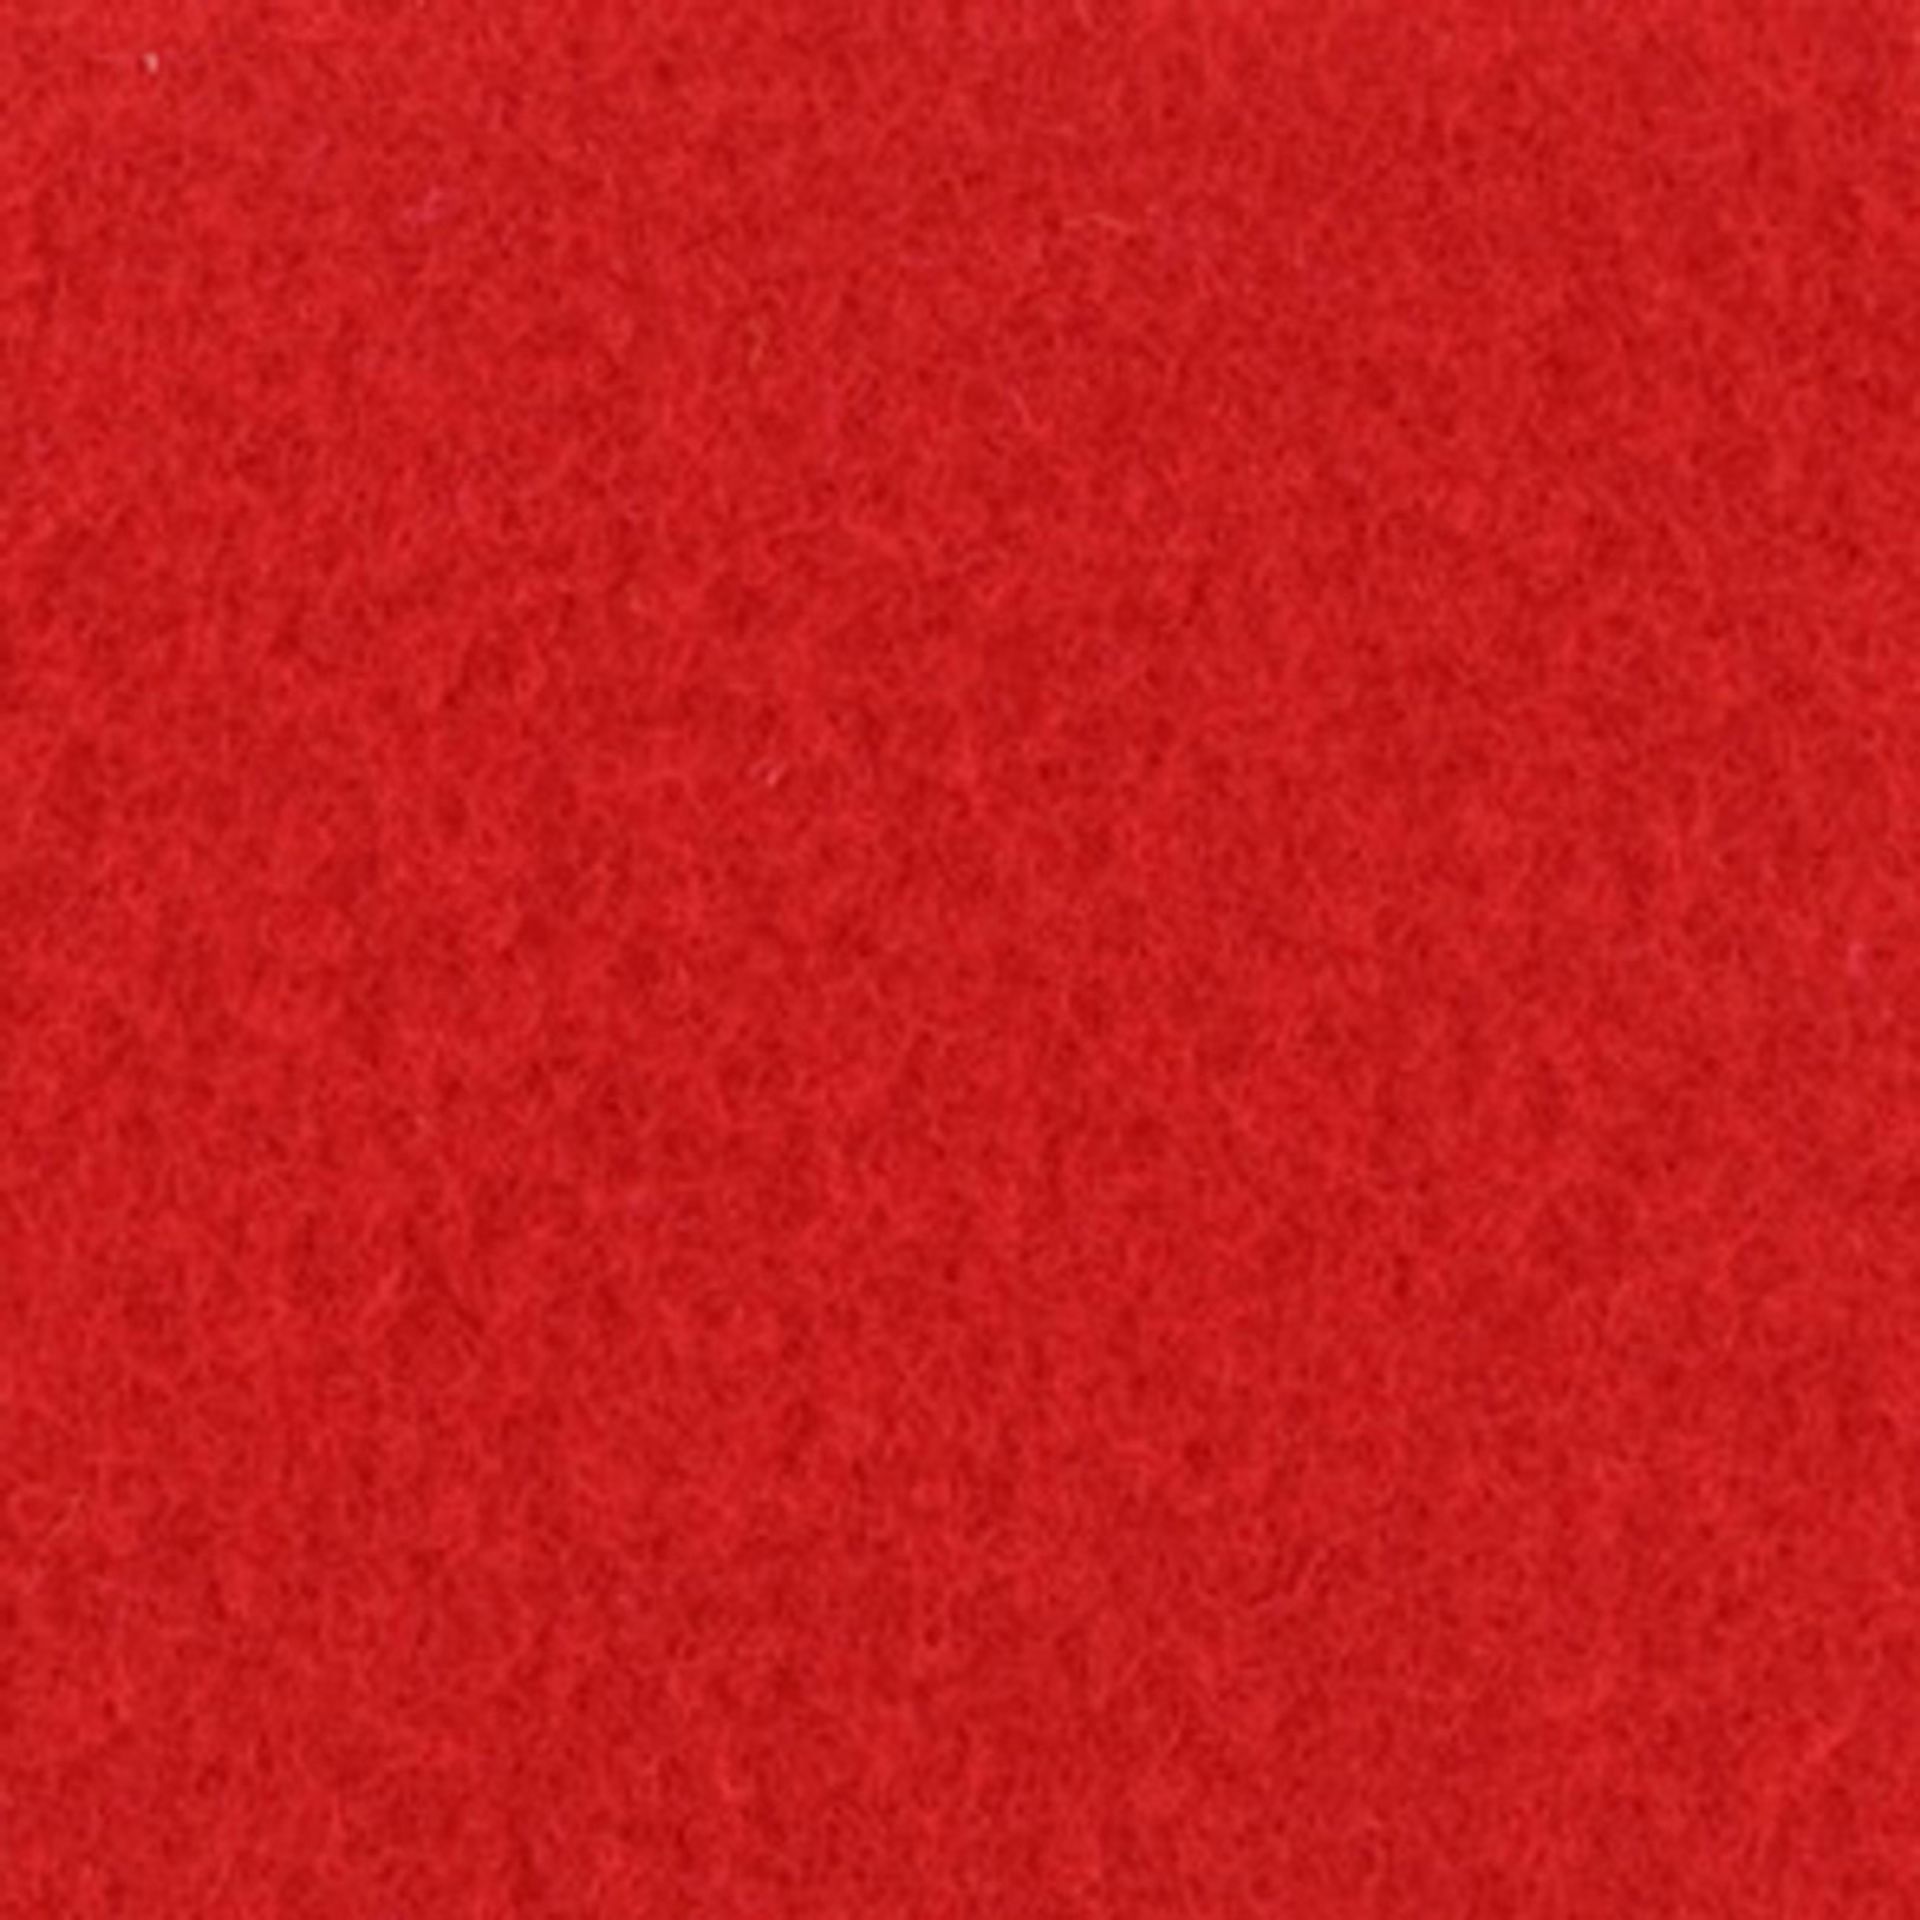 Messeboden Velours EXPOLUXE Red 9532 mit Schutzfolie  - Rollenbreite 200 cm